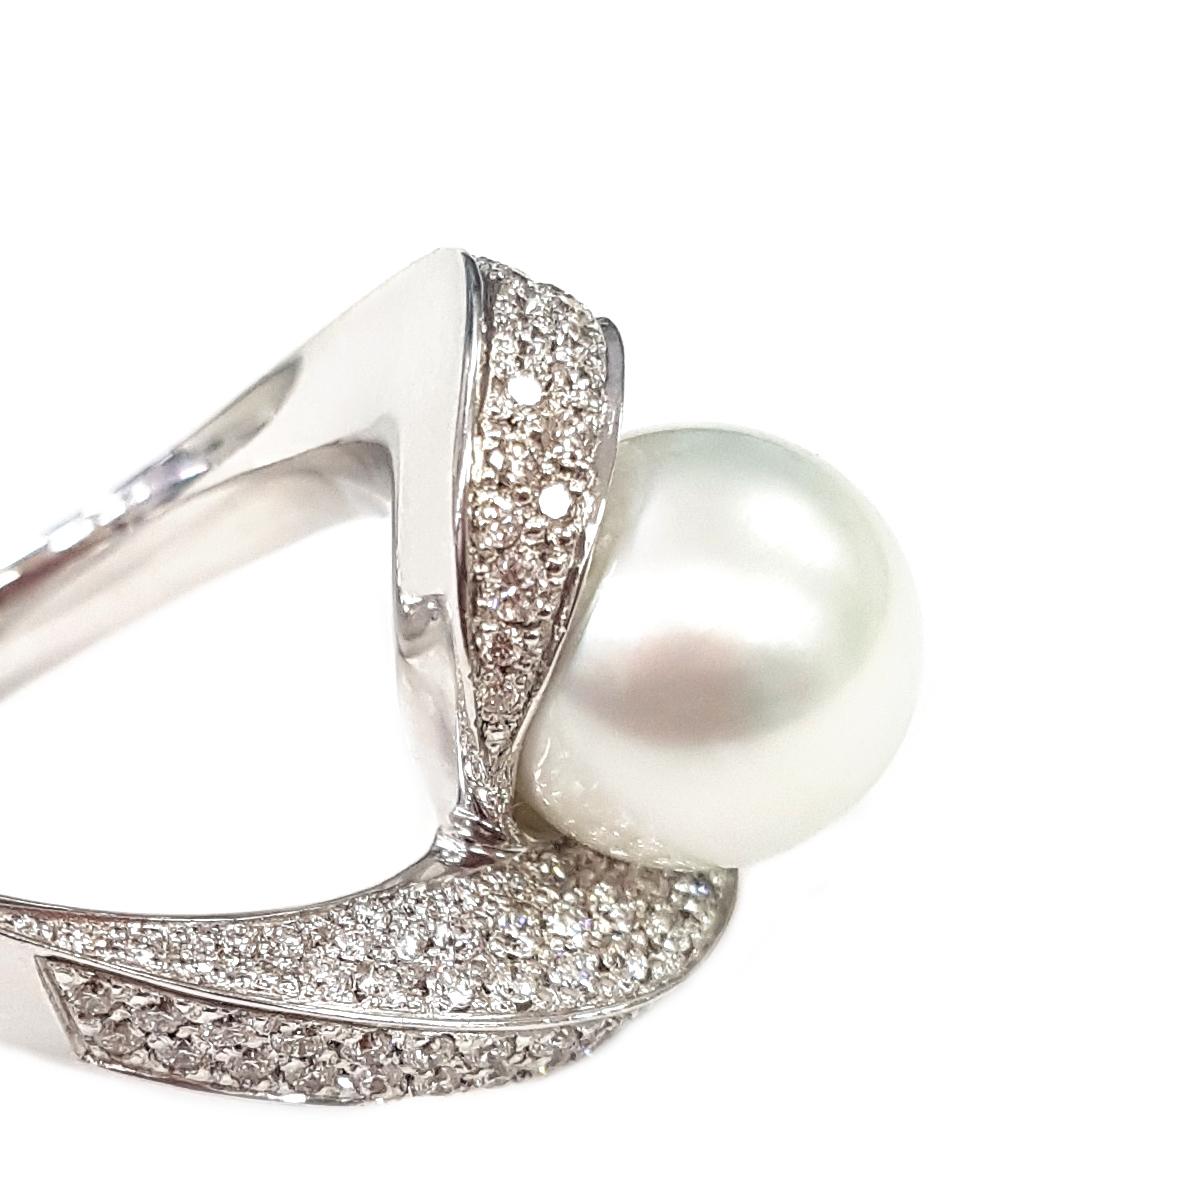 Cette élégante bague de cocktail, entièrement créée à la main en or blanc 18 carats, présente une perle d'Australie de 10 carats qui semble en équilibre sur une paire de bras en spirale sertis de diamants blancs d'un total de 1,14 carat. 

Le sommet